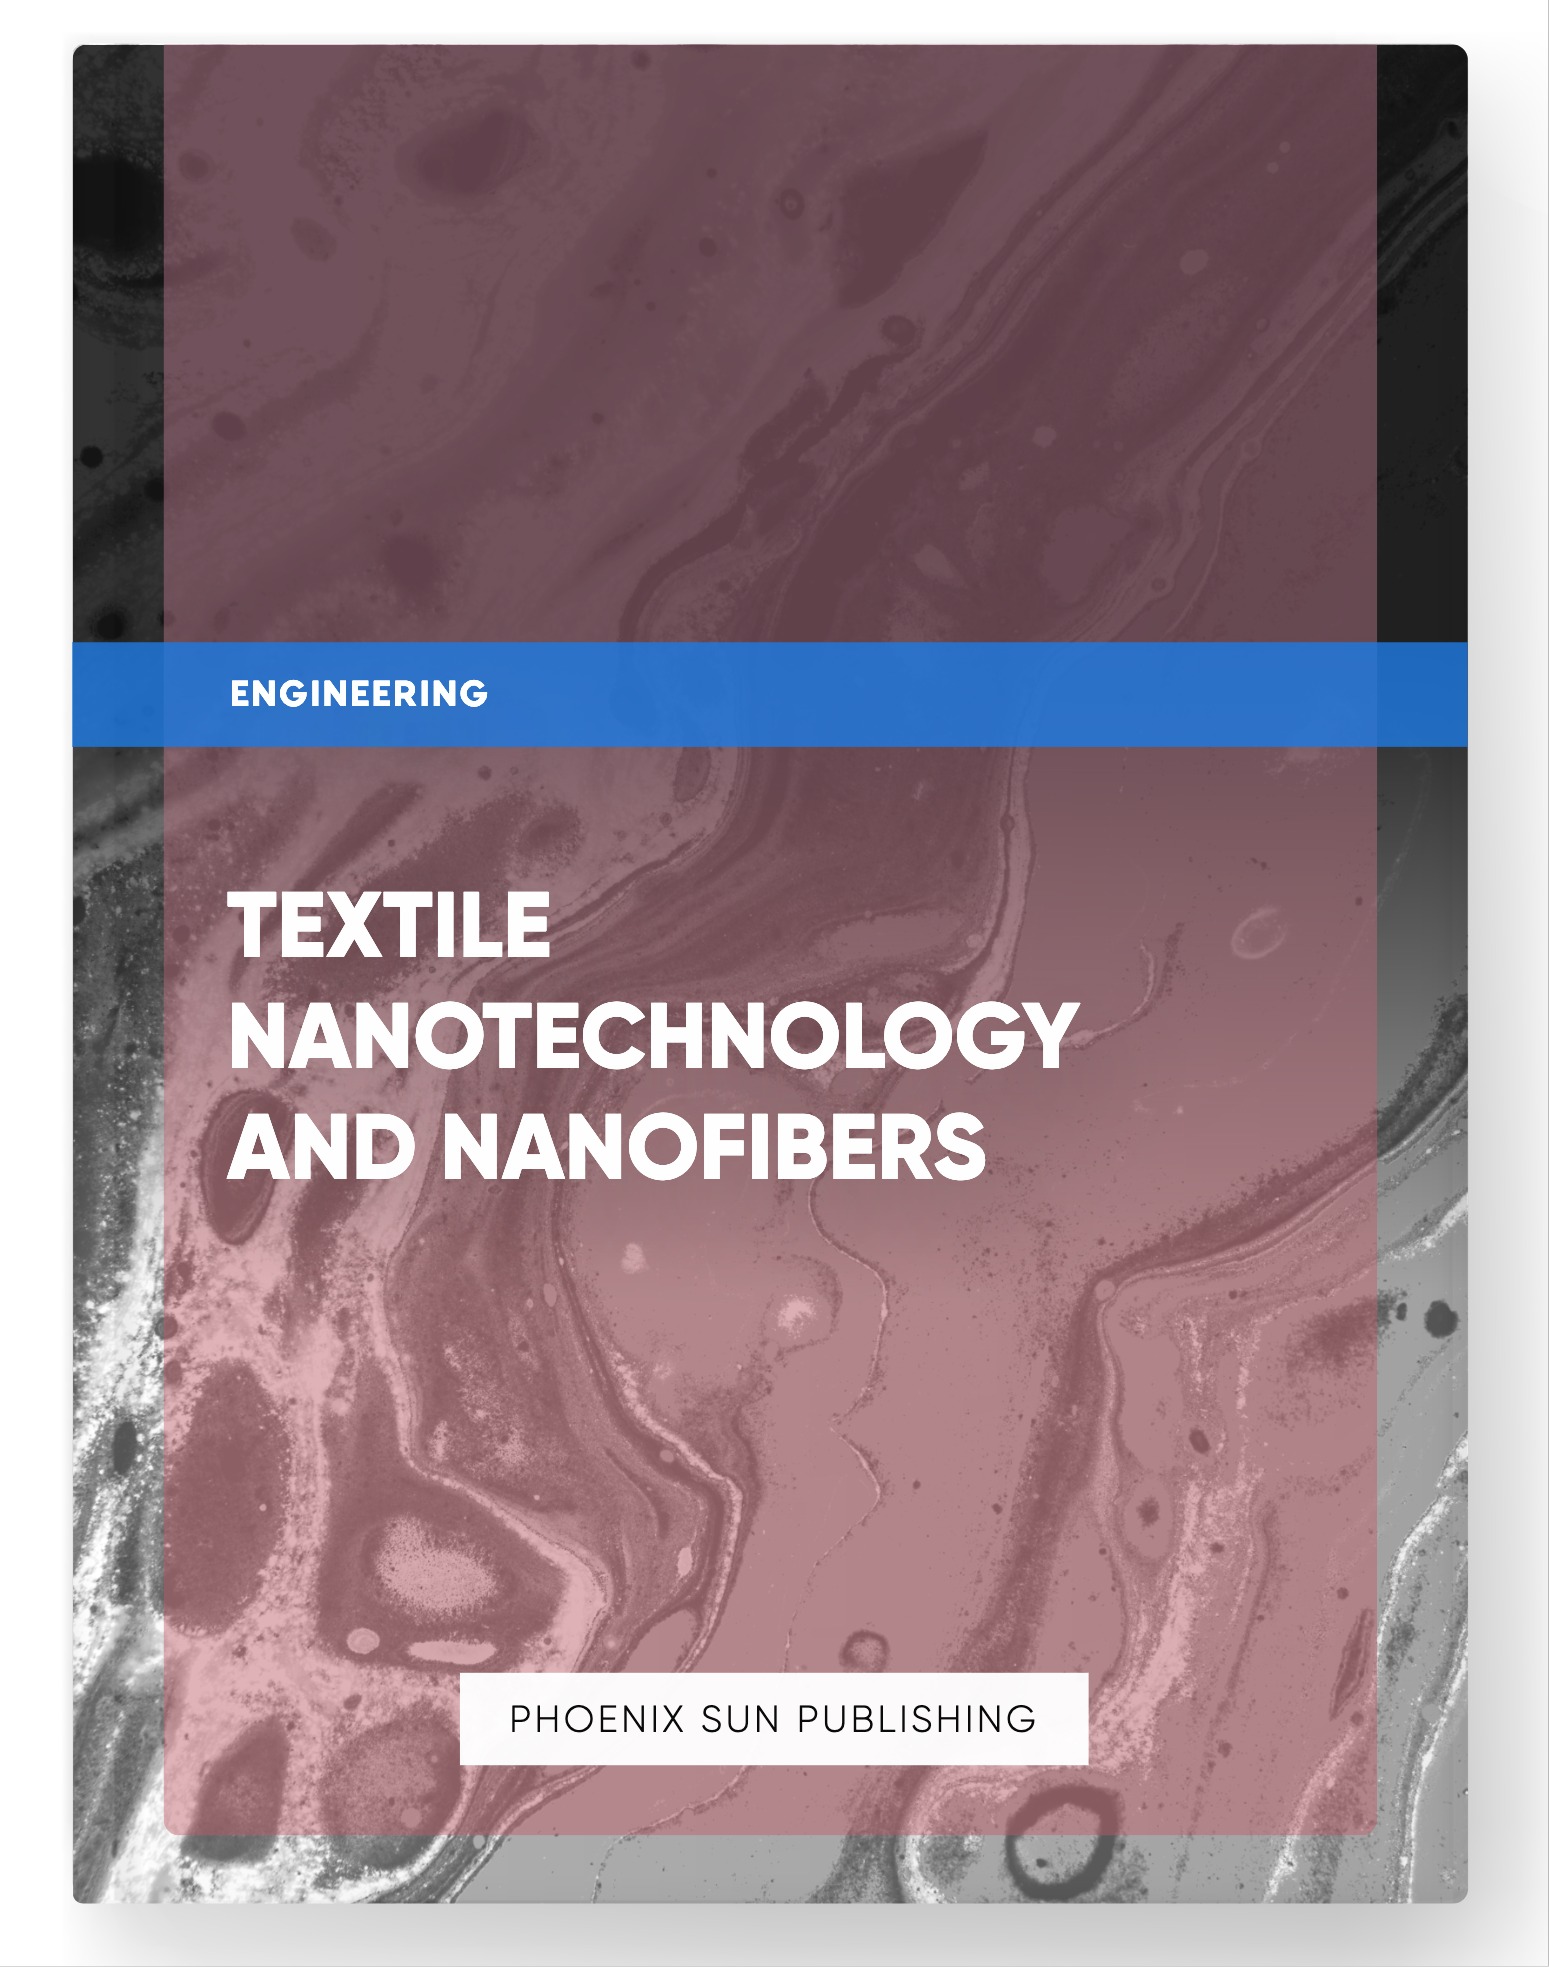 Textile Nanotechnology and Nanofibers